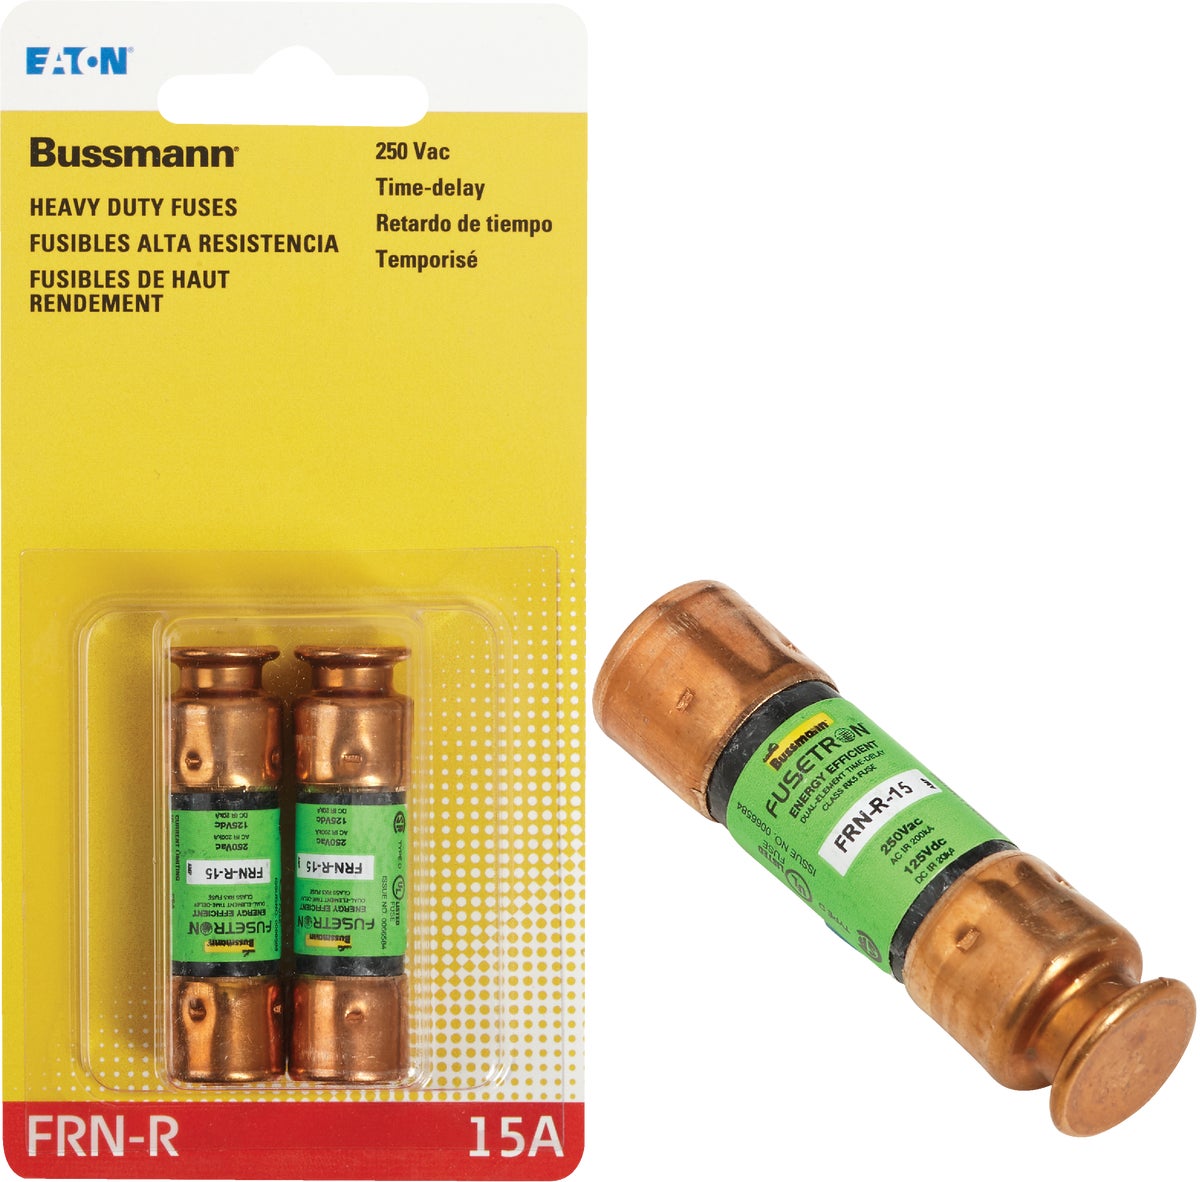 Buy Bussmann Fusetron FRN-R Cartridge Fuse 20